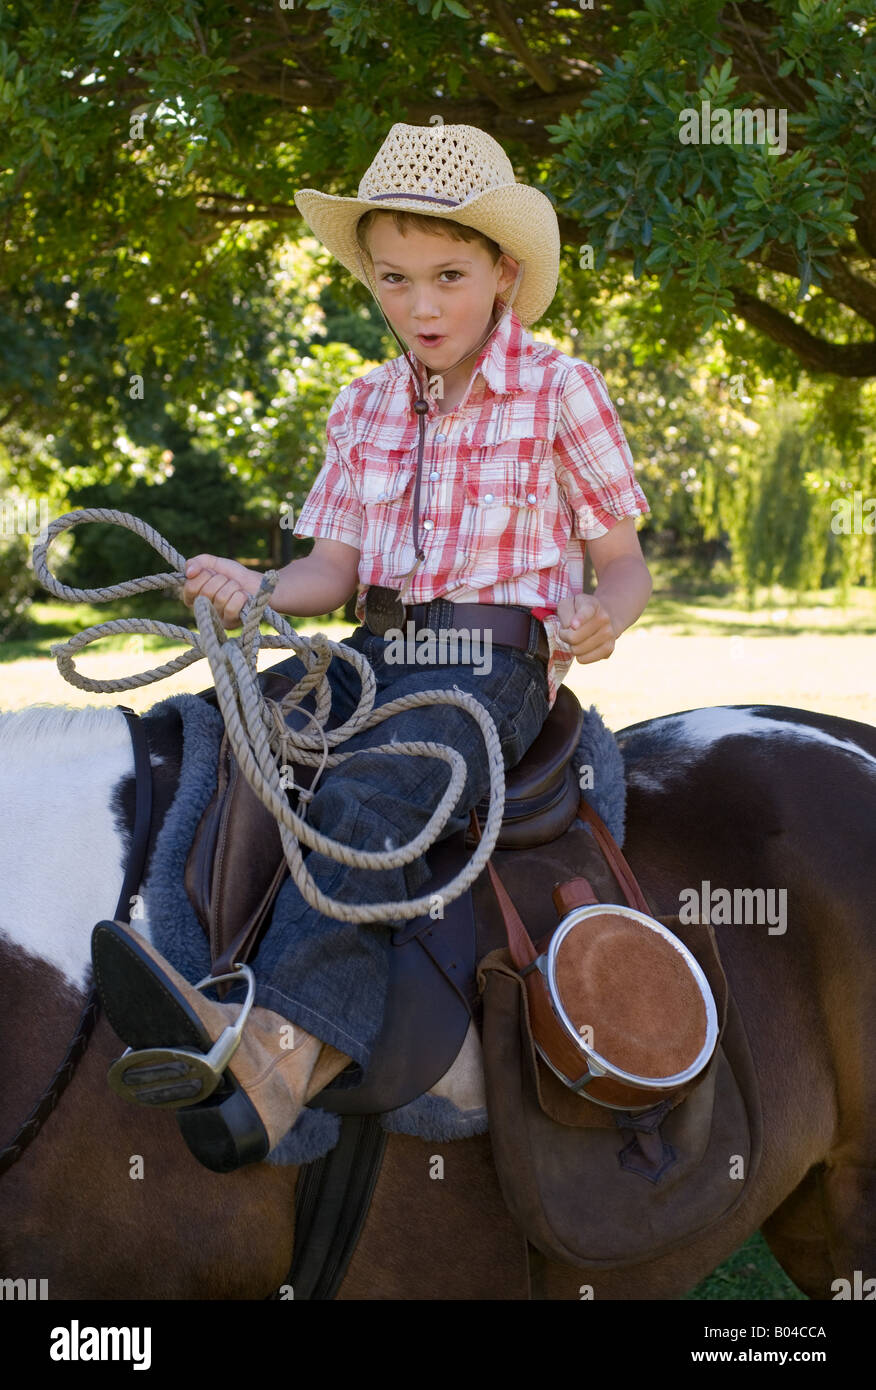 Un garçon à cheval et tenant un lasso Banque D'Images